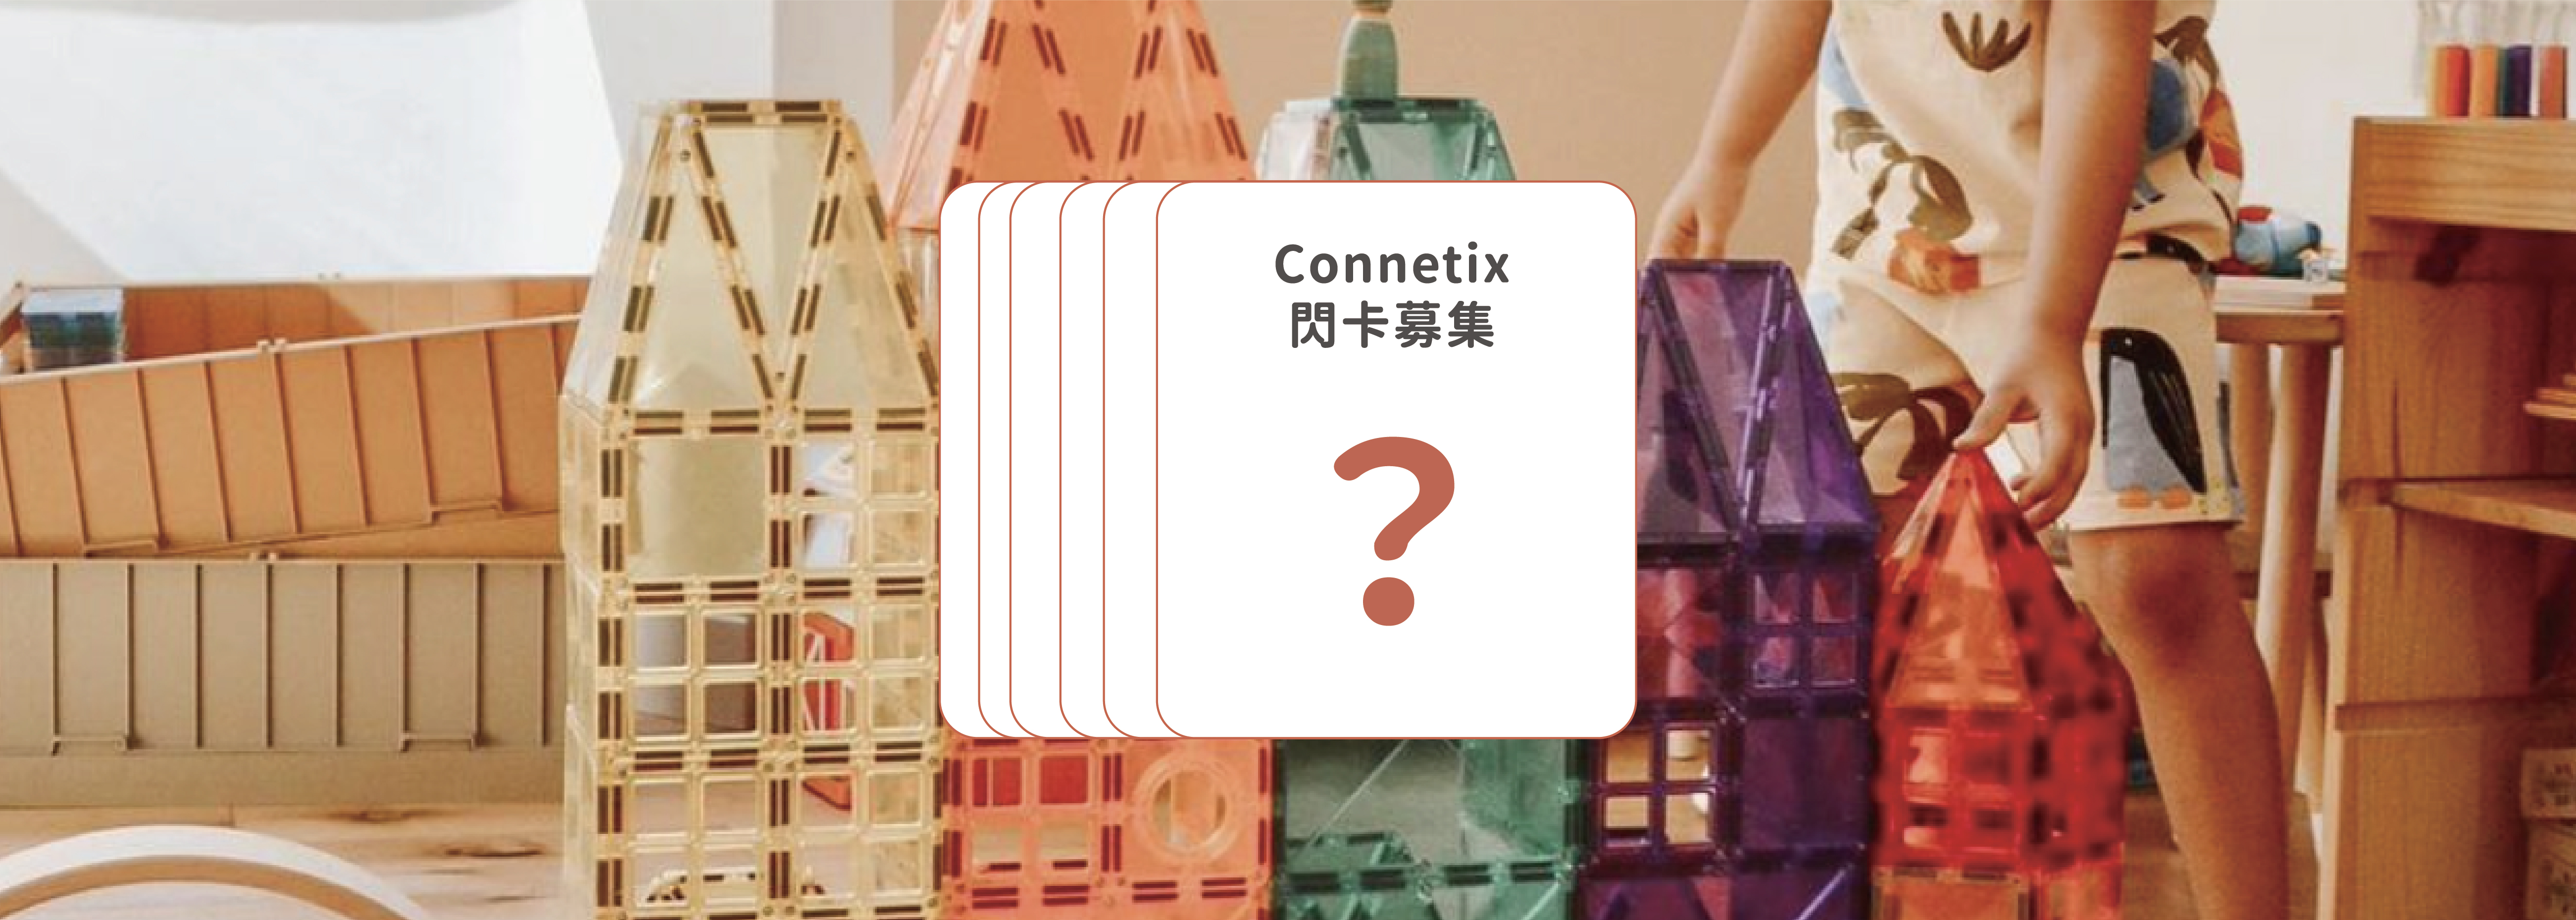 Connetix 十大玩法『閃卡大募集』